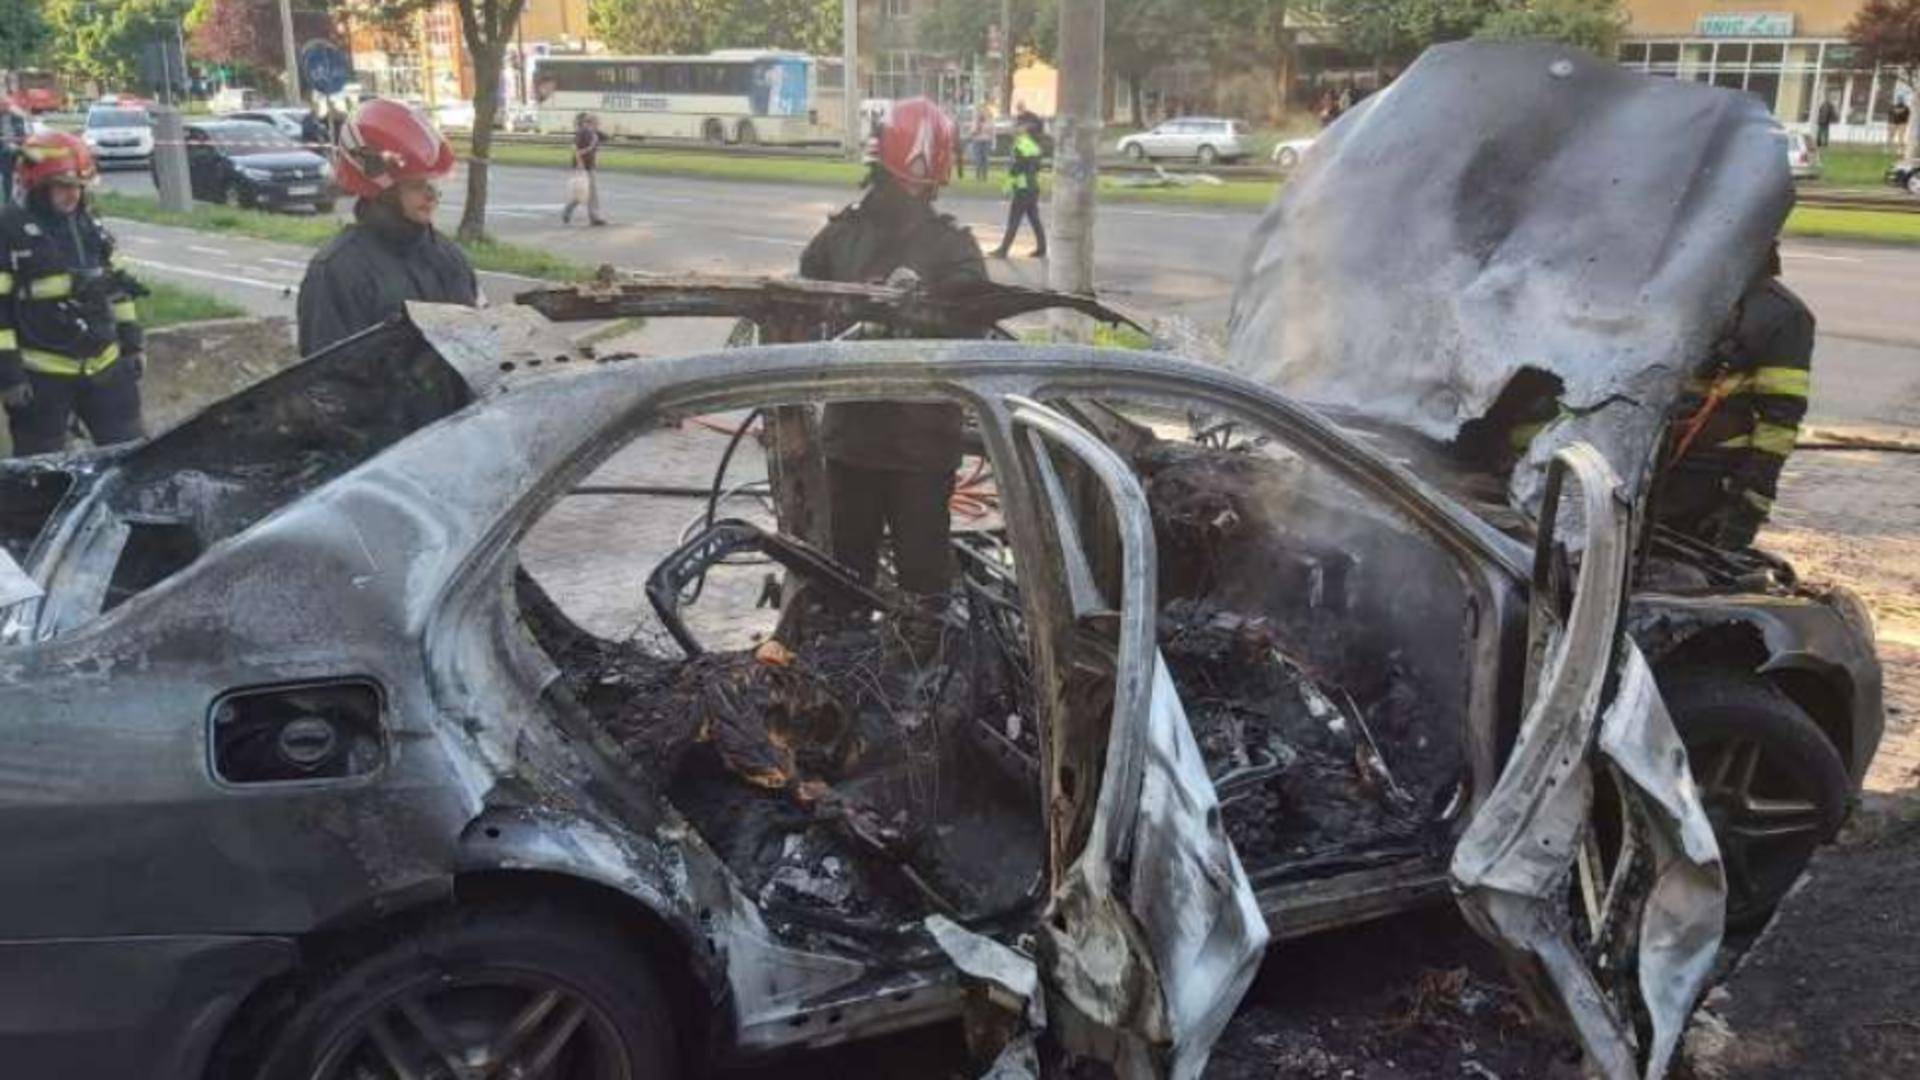 Explozia auto de la Arad este făcută de o mână criminală? Radu Tudoran face mărturisiri terifiante